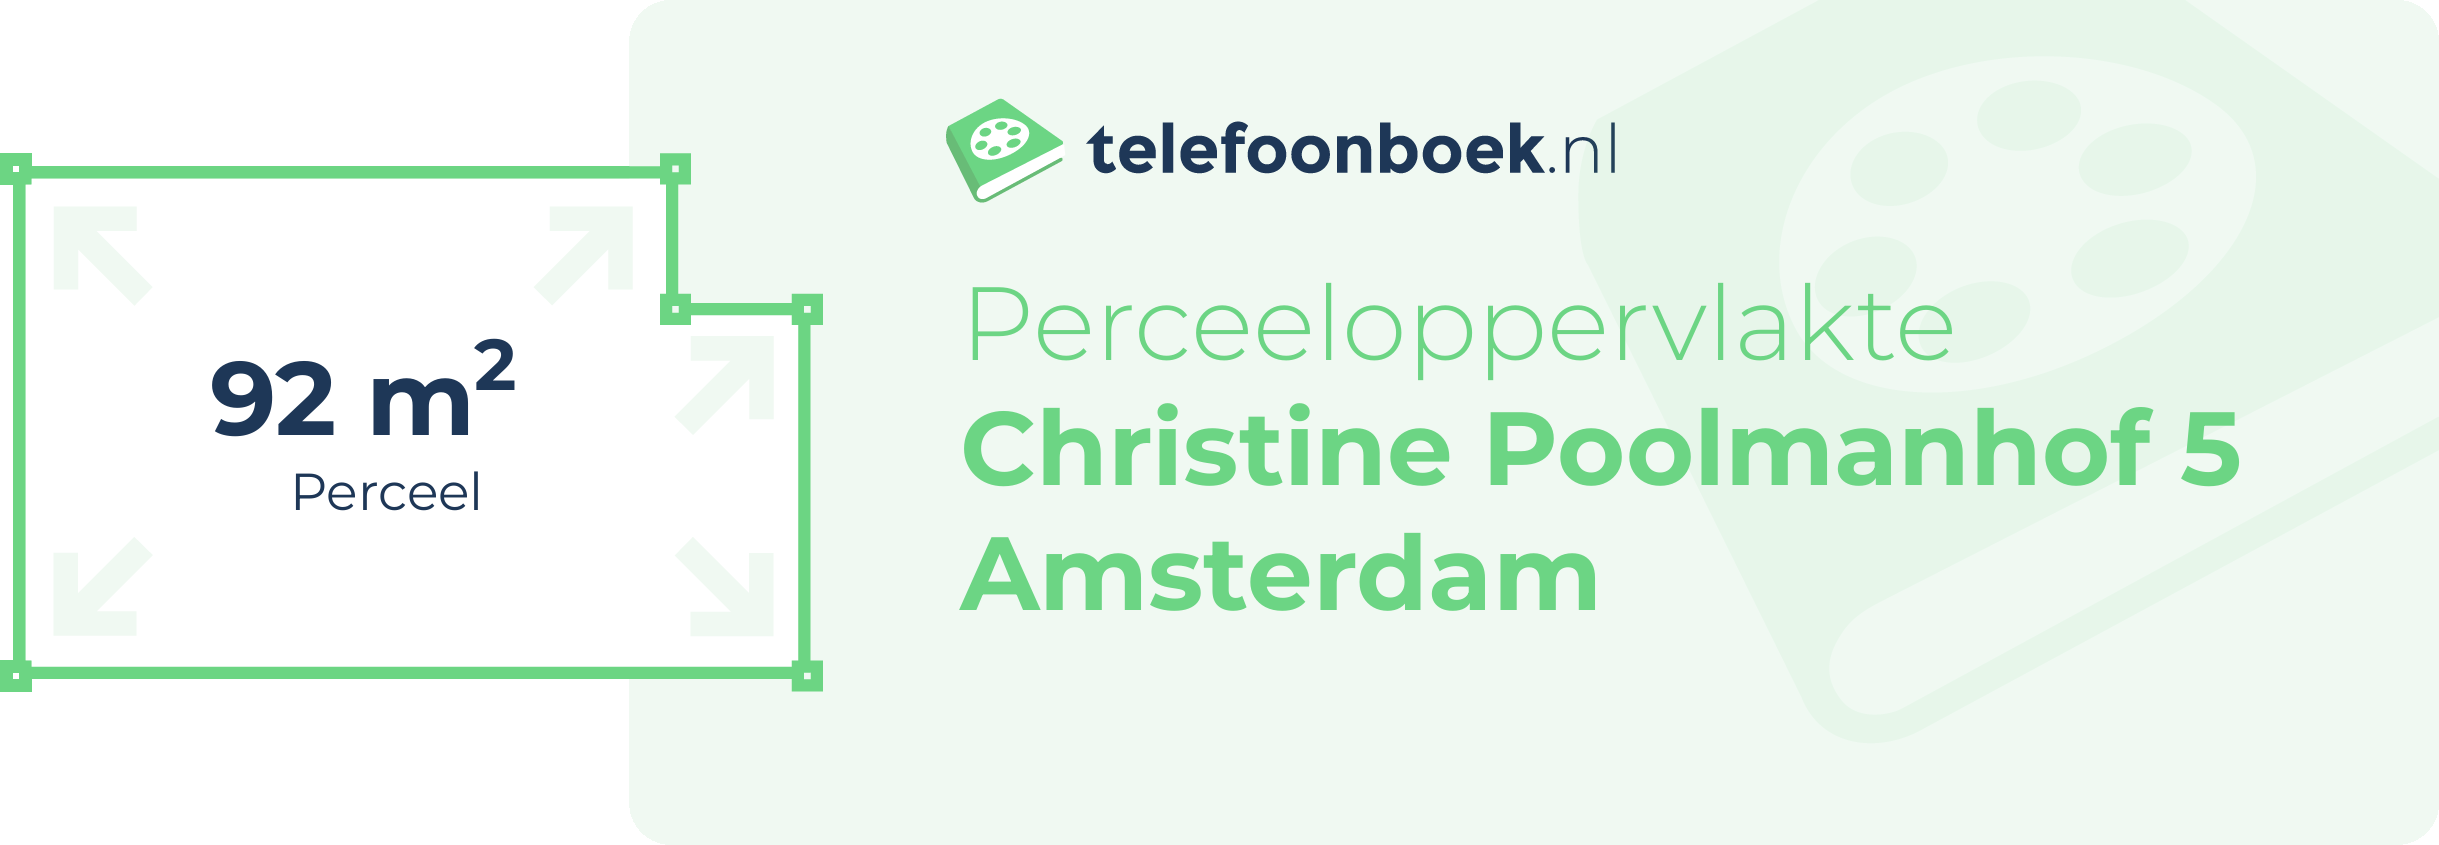 Perceeloppervlakte Christine Poolmanhof 5 Amsterdam